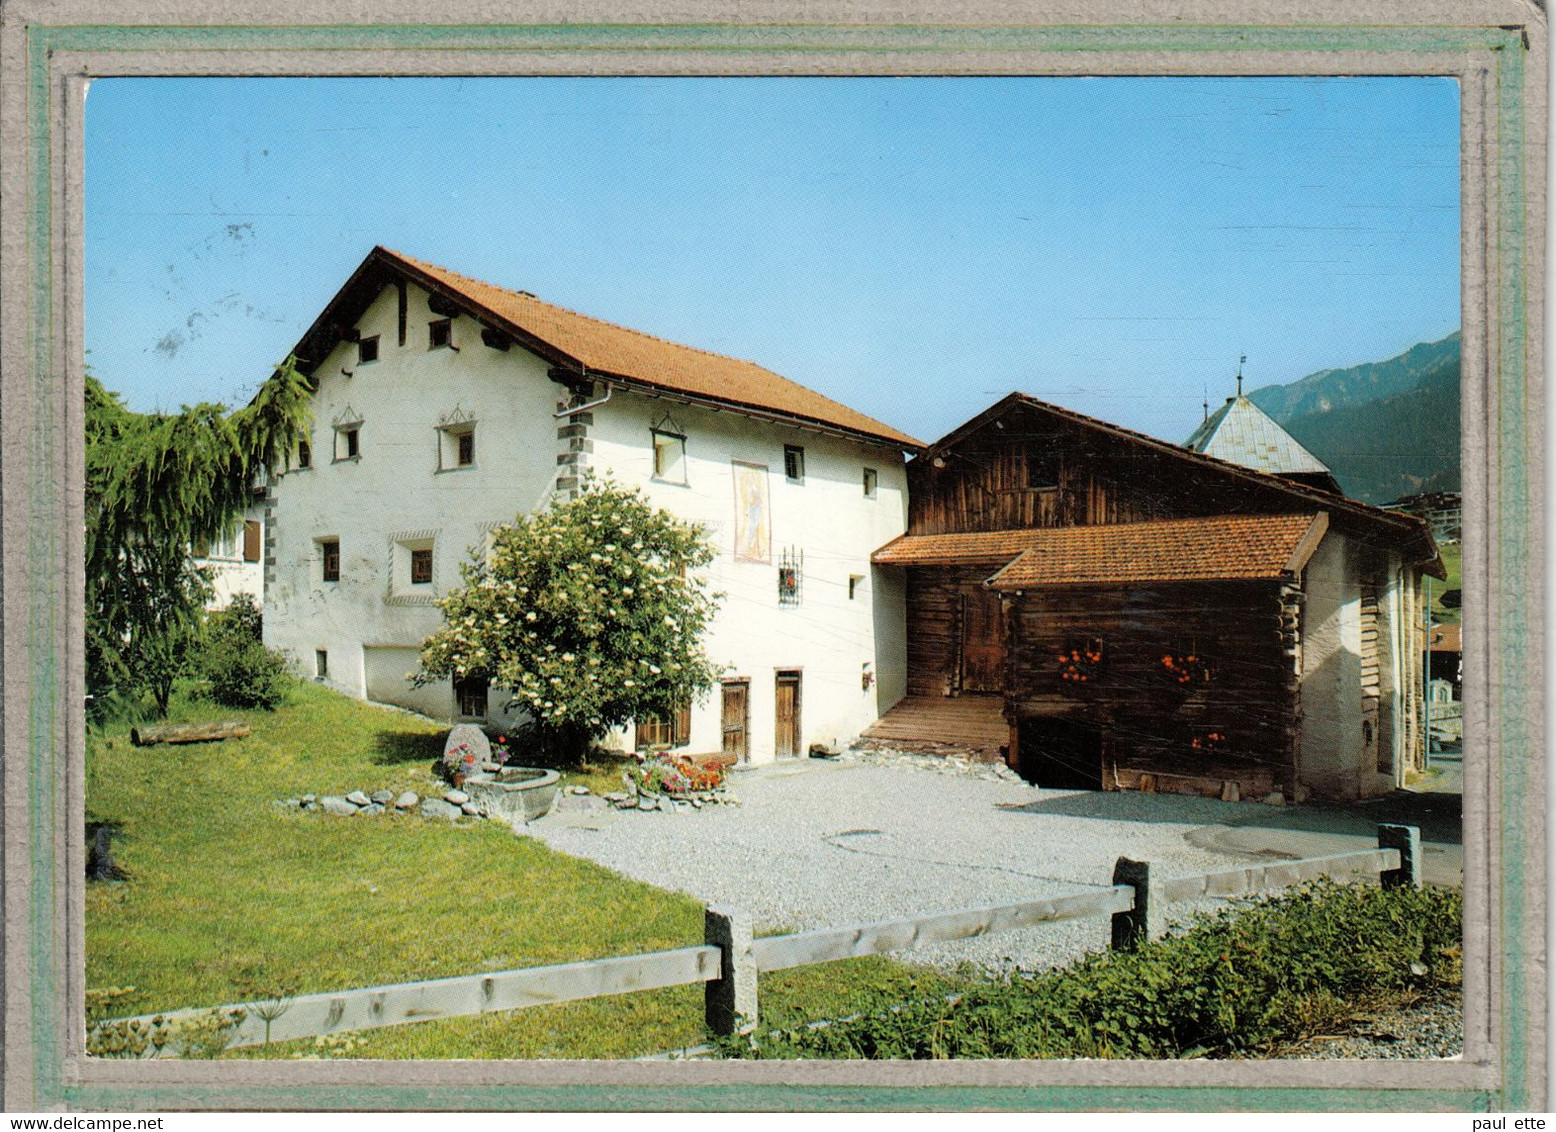 CPSM  - (Suisse-GR Grisons) - SAVOGNIN - Oberhalbsteiner Bauernhof Aus Dem 17. Jahrhundert - Savognin